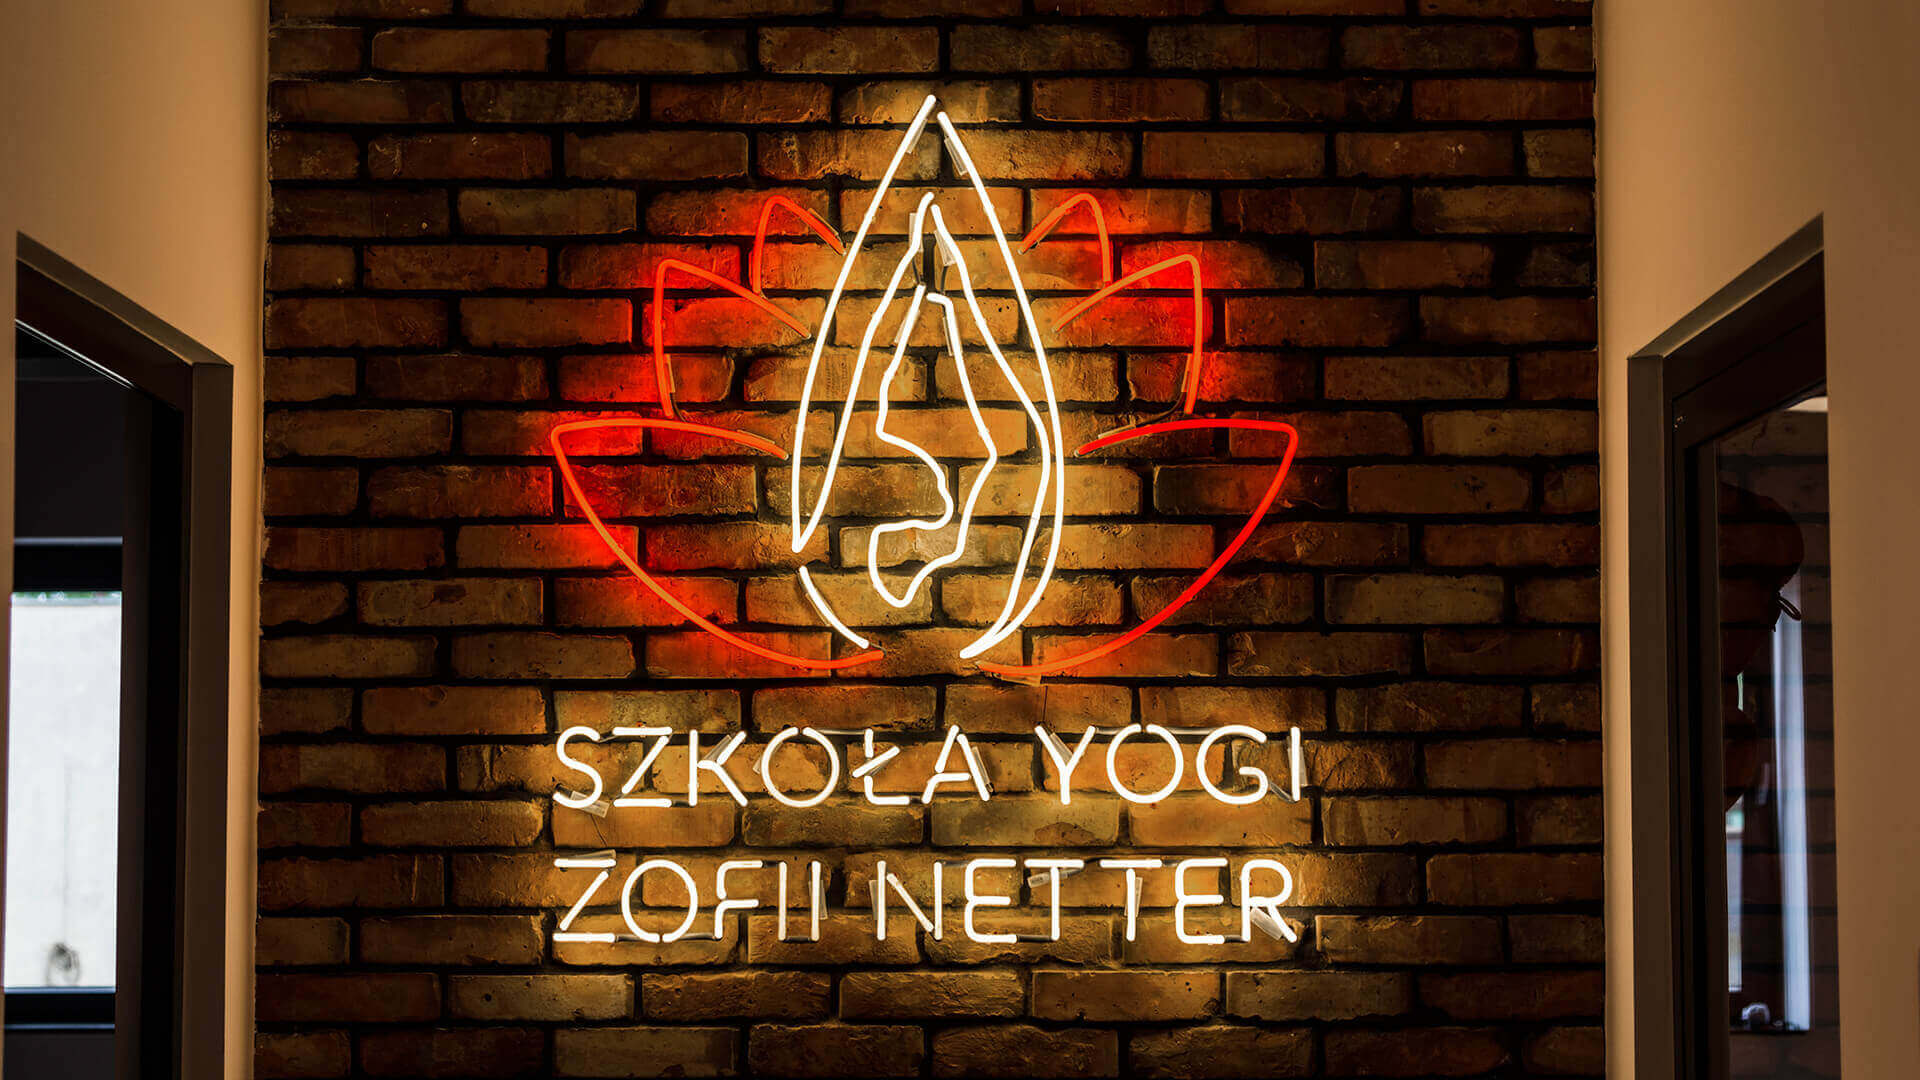 yoga escuela de yoga de zofia netter - szkoły-yogi-zofii-netter-neón-color-iluminado-en-la-pared-con-cegly-adherido-a-la-pared-neón-en-la-carta-de-oficina-neón-logo-firmowe-neón-en-orden-gdansk-przymorze (5)